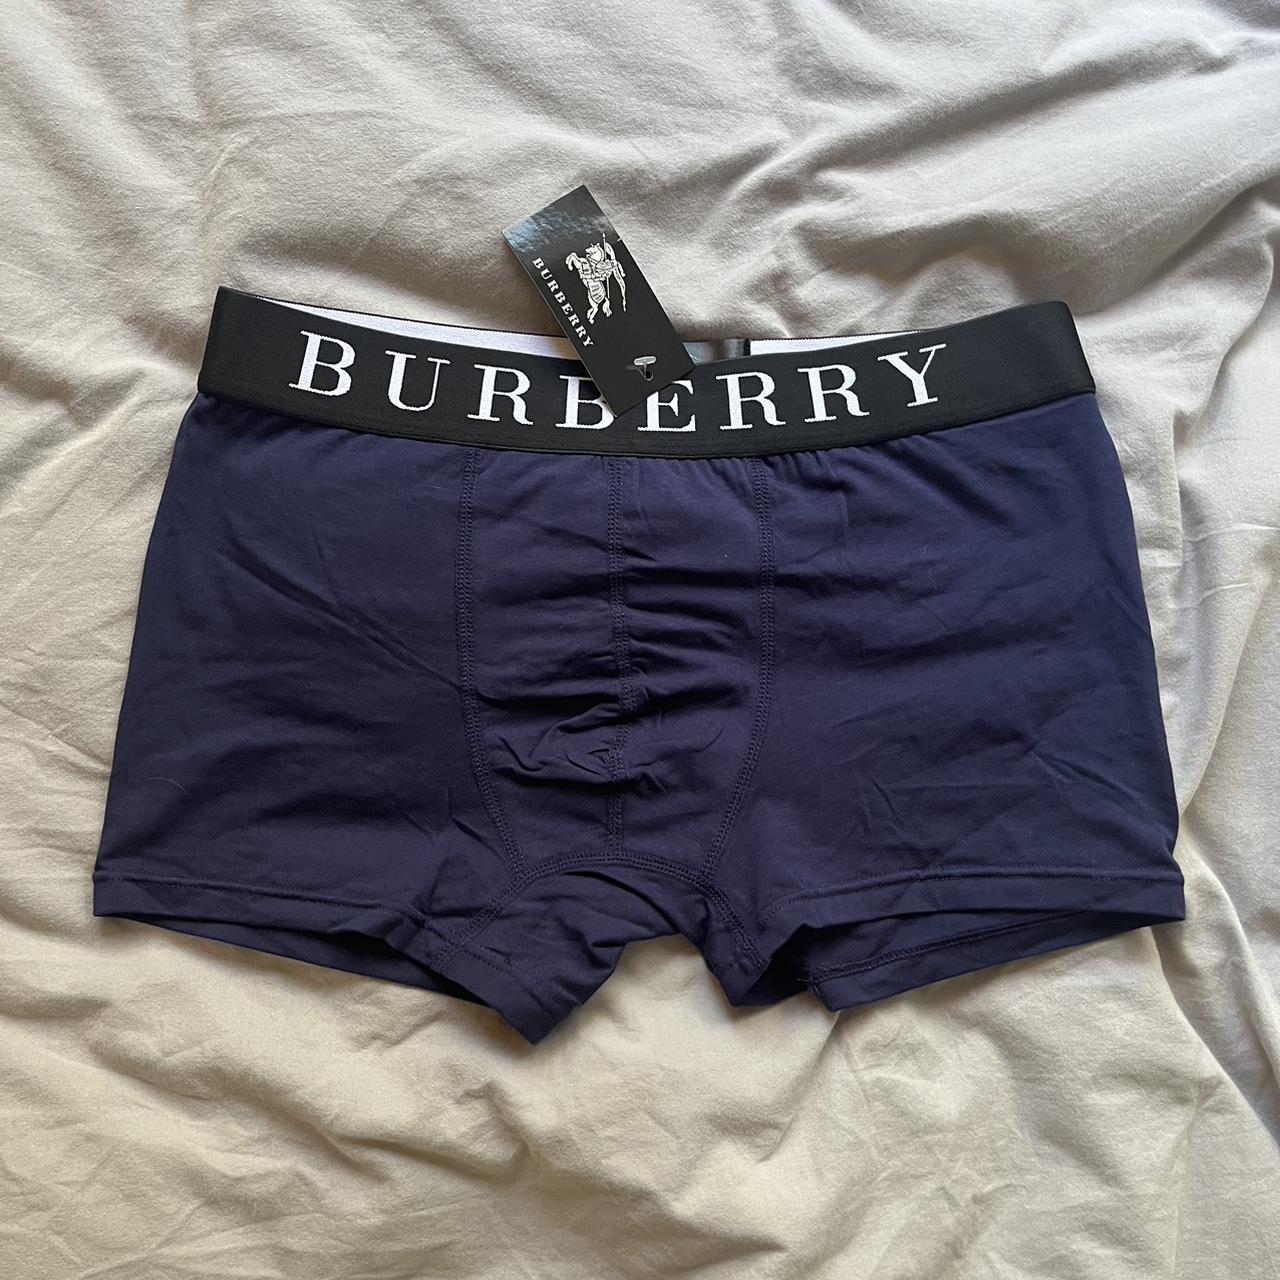 Burberry Men's Navy Boxers-and-briefs | Depop